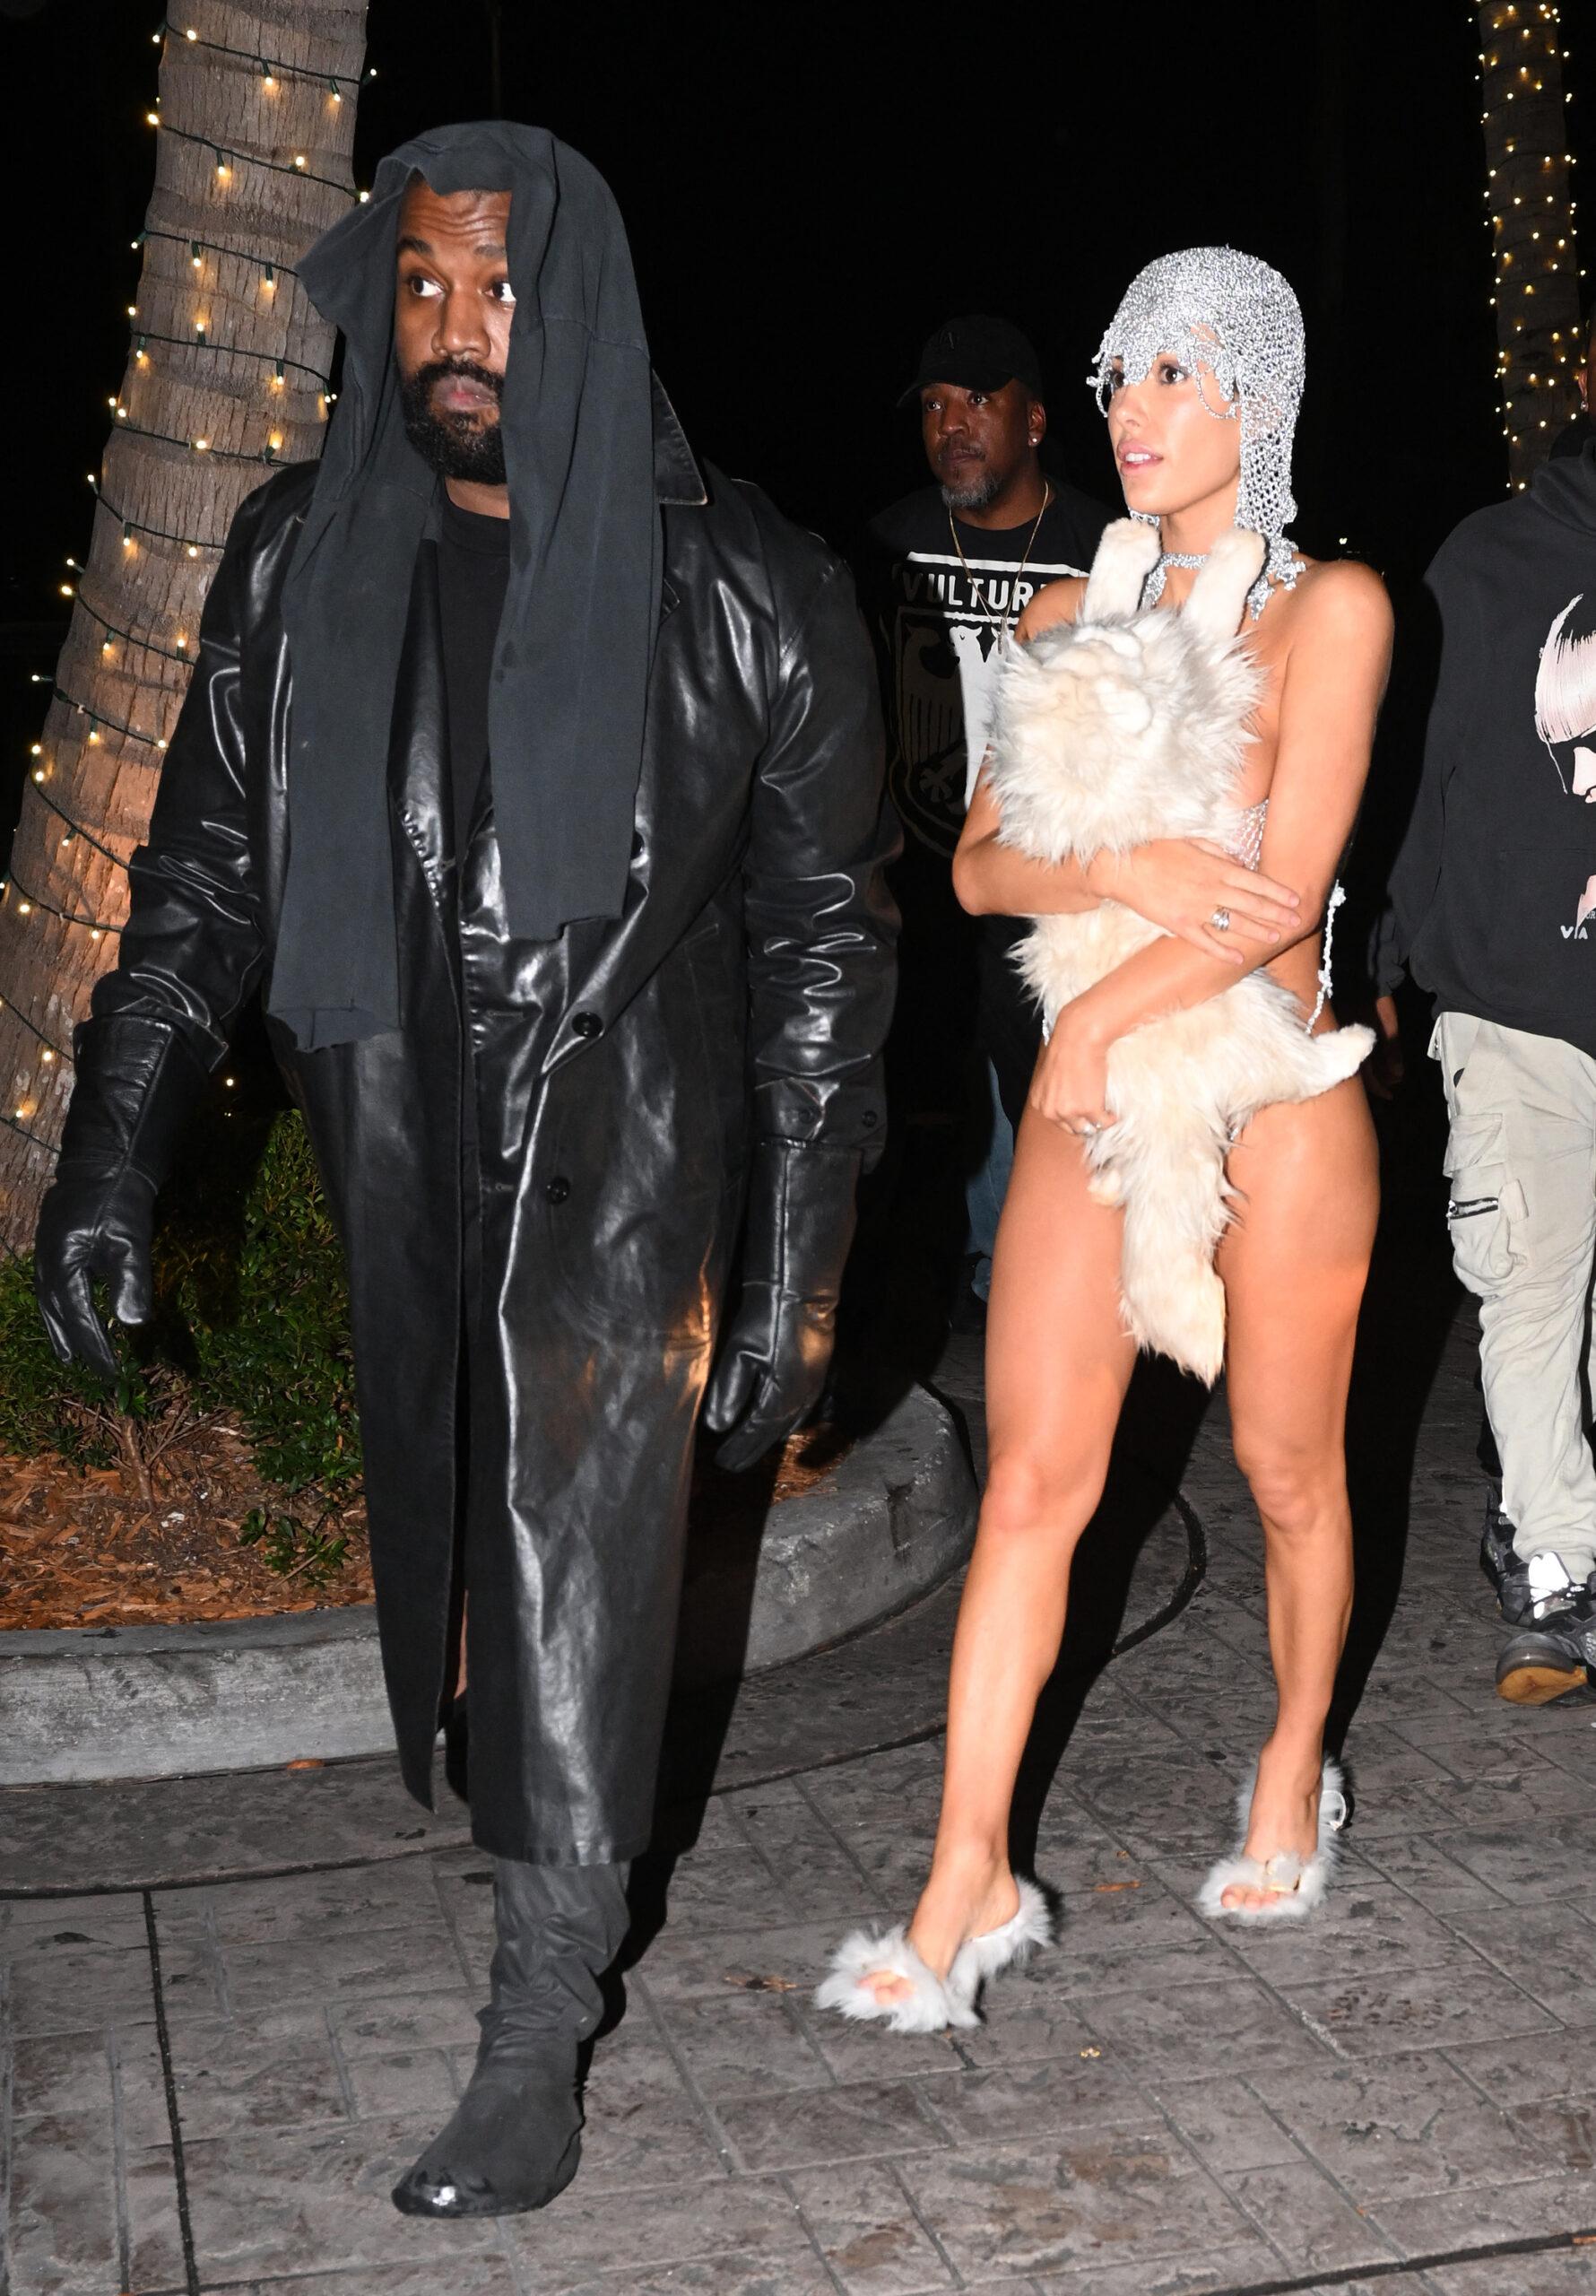 A esposa de Kanye West, Bianca Censori, está quase nua em um conjunto de cordas de prata proibido para menores, cobrindo apenas um gato de pelúcia enquanto a dupla causa um rebuliço na boate LIV de Miami.